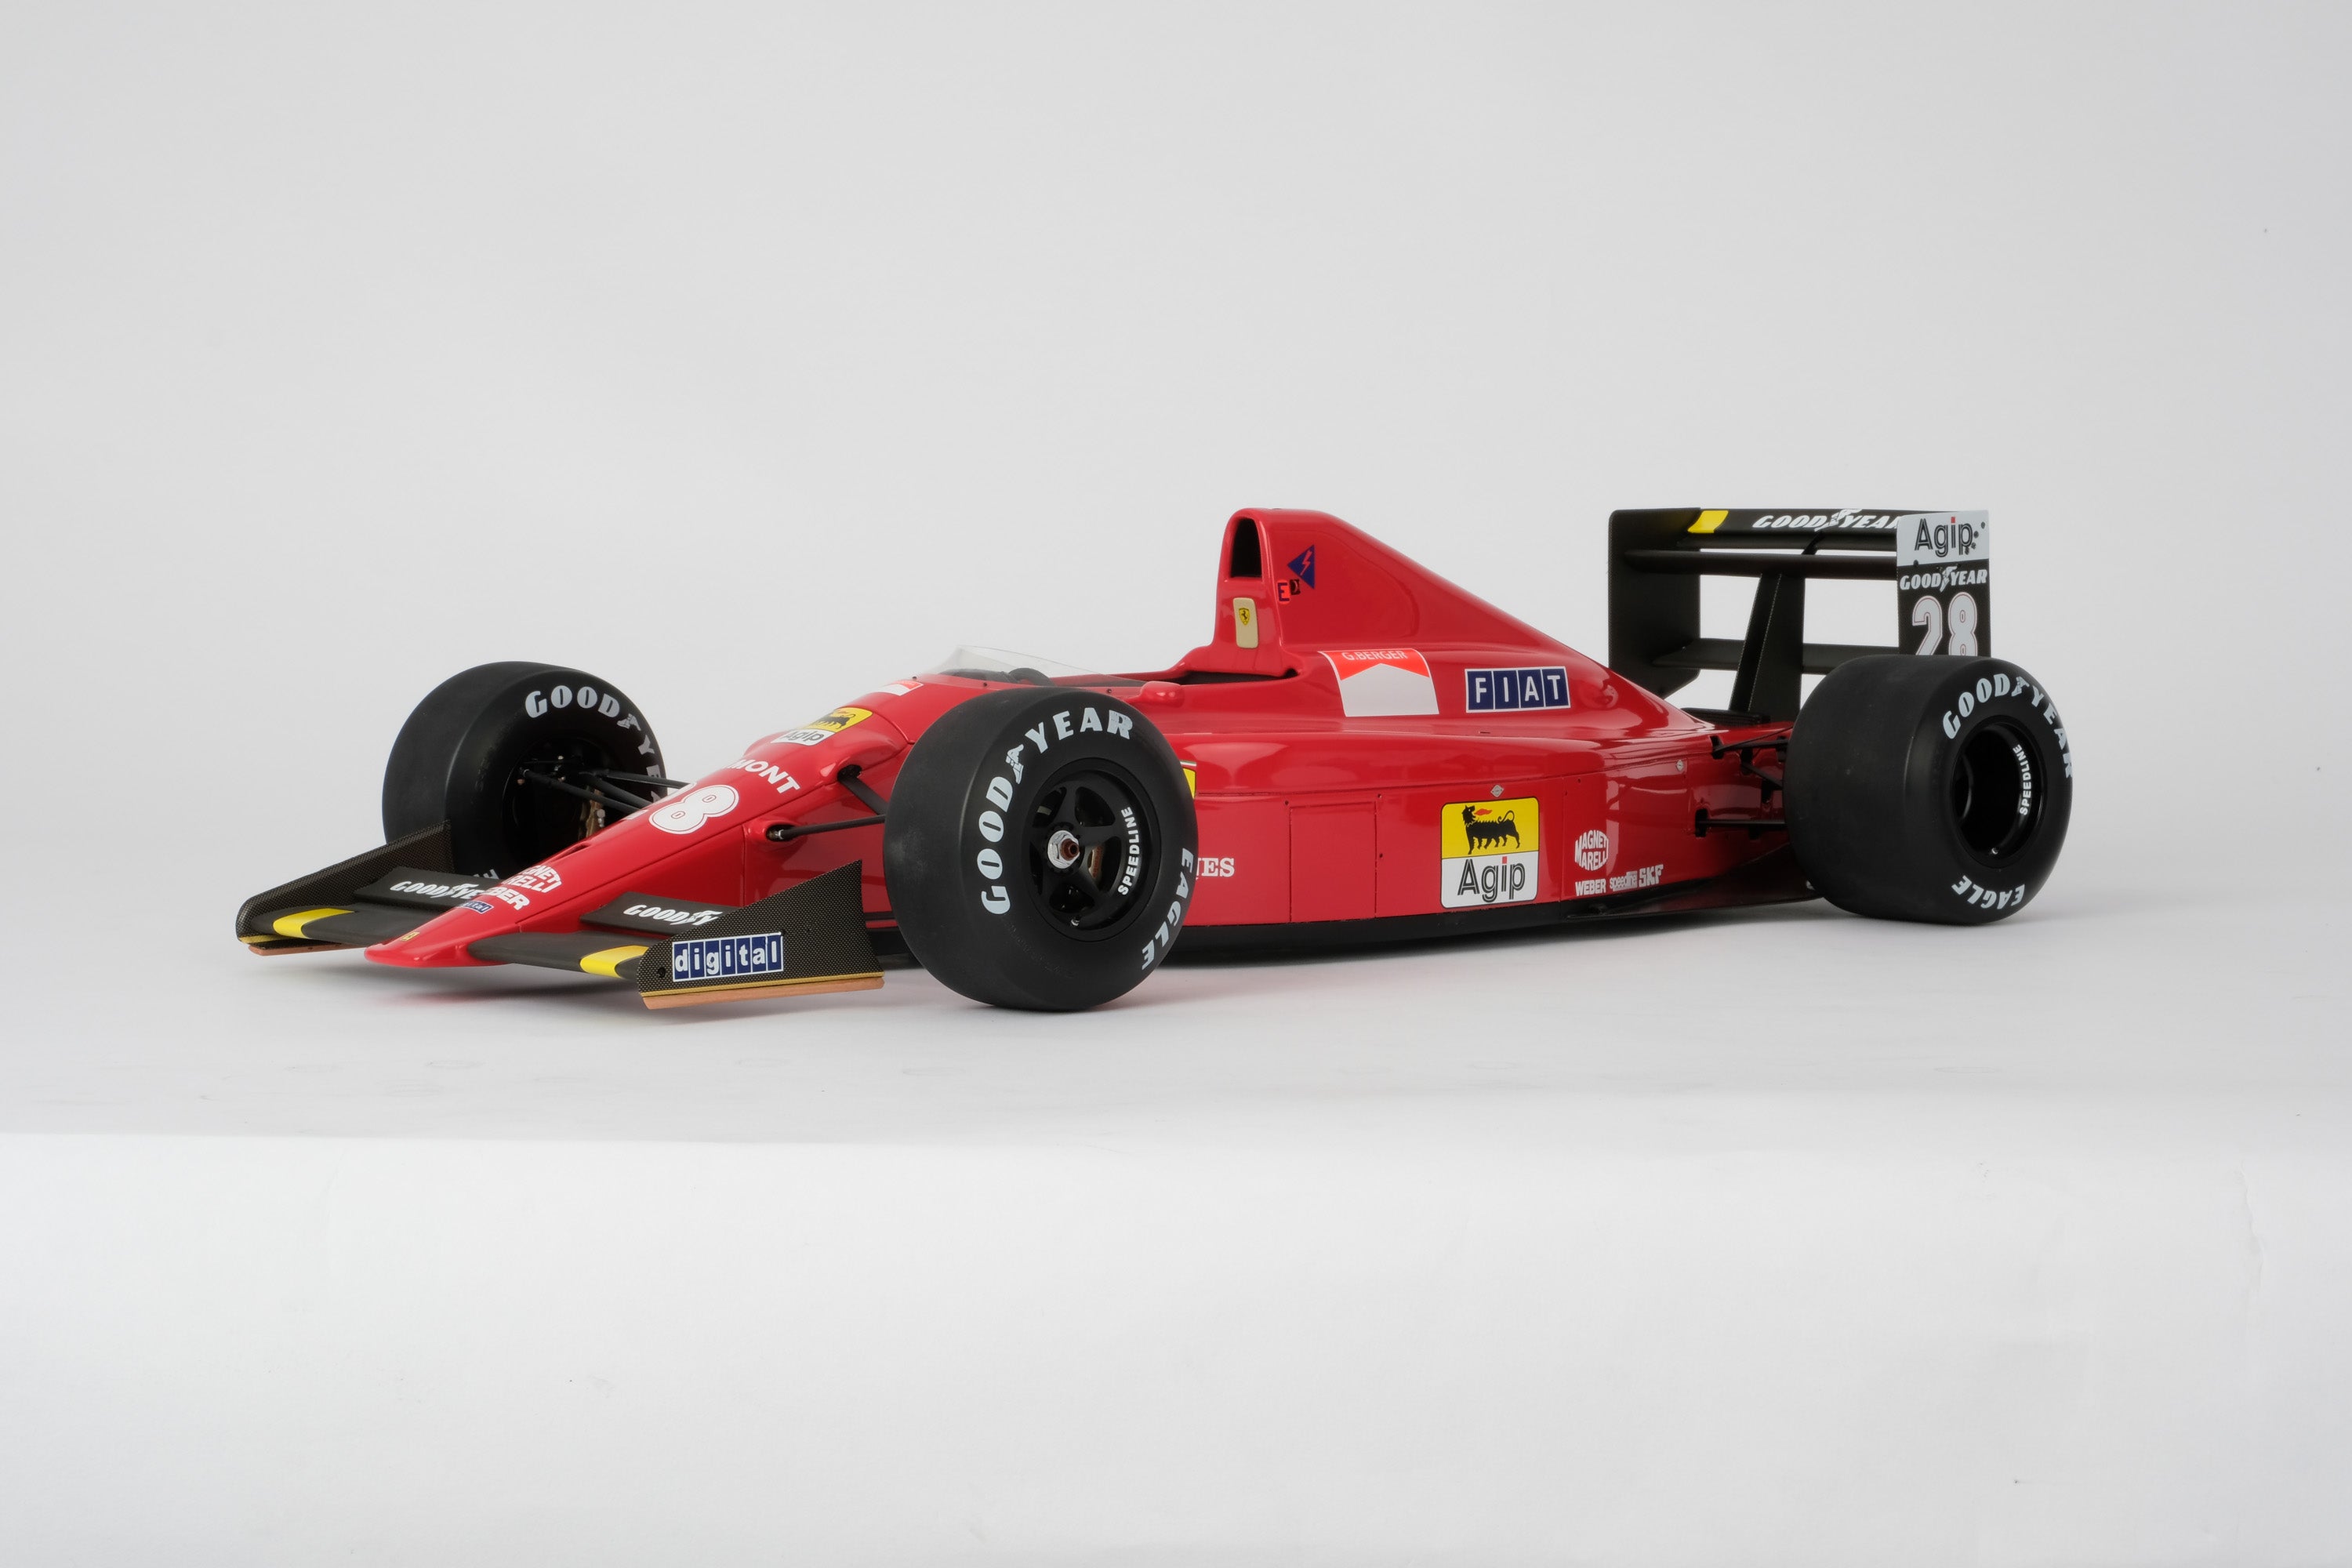 Ferrari F1-89 (640) British GP (1989) - Gerhard Berger – Amalgam 